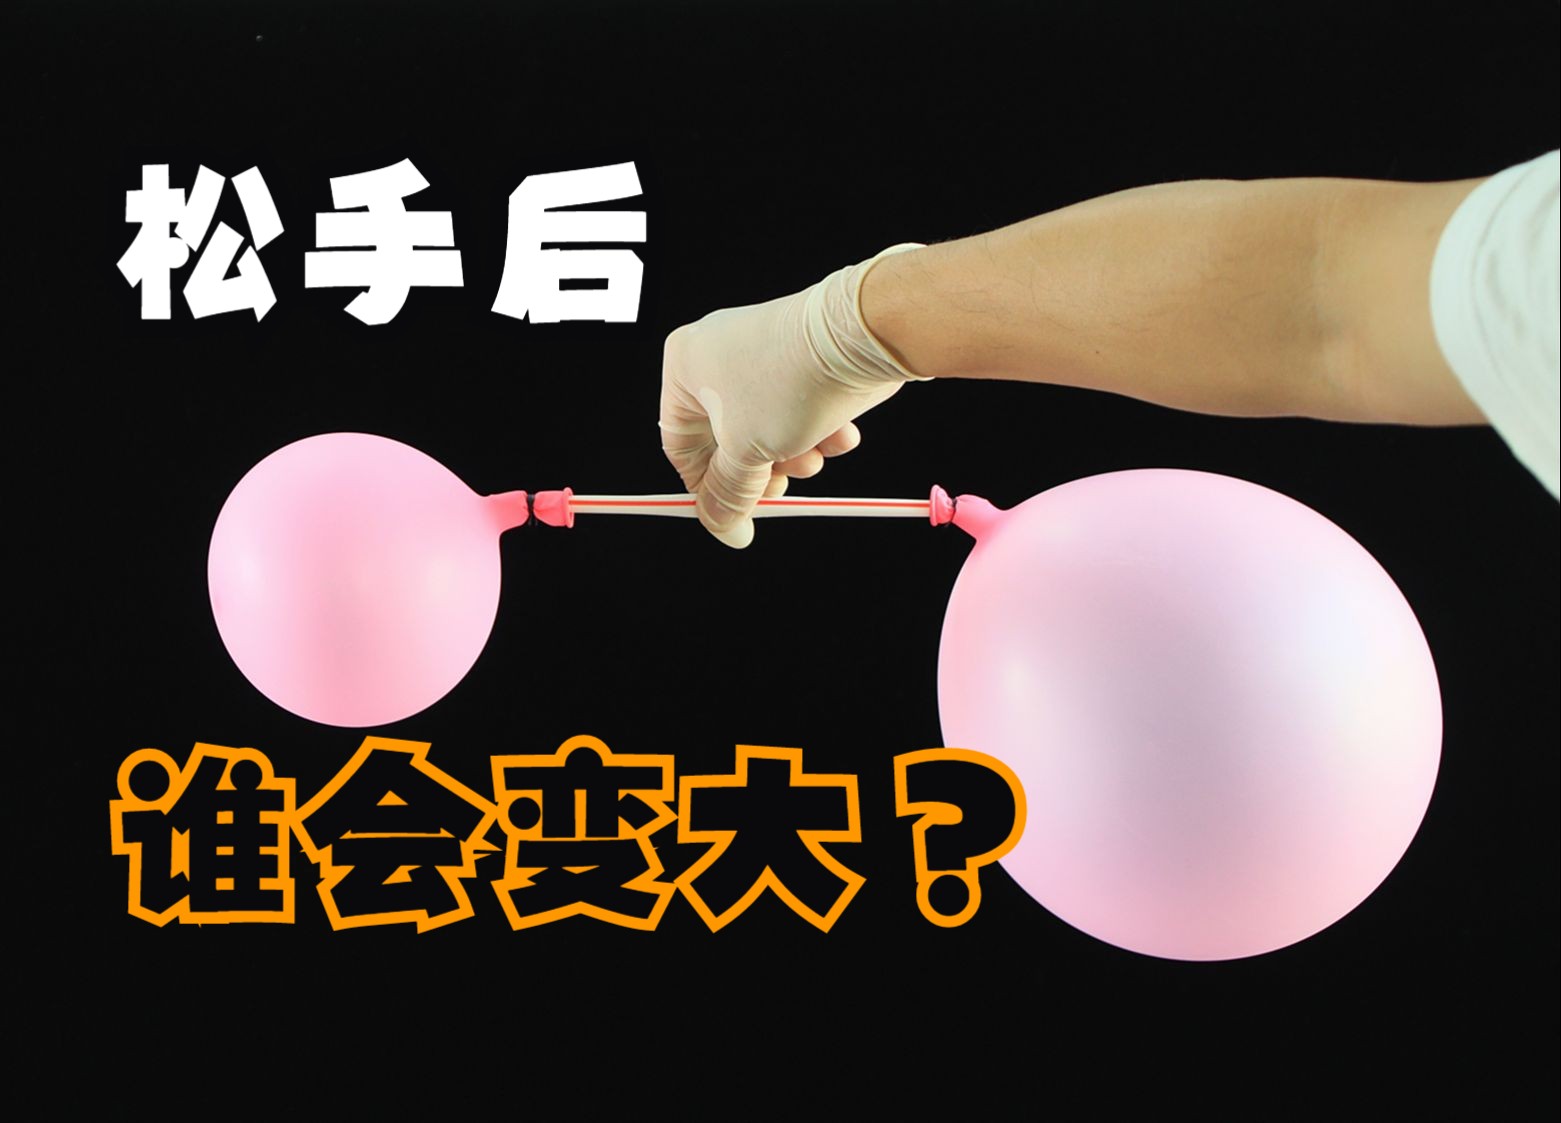 吸管两端一大一小两个气球，松手后哪个气球会变大？哪个变小？